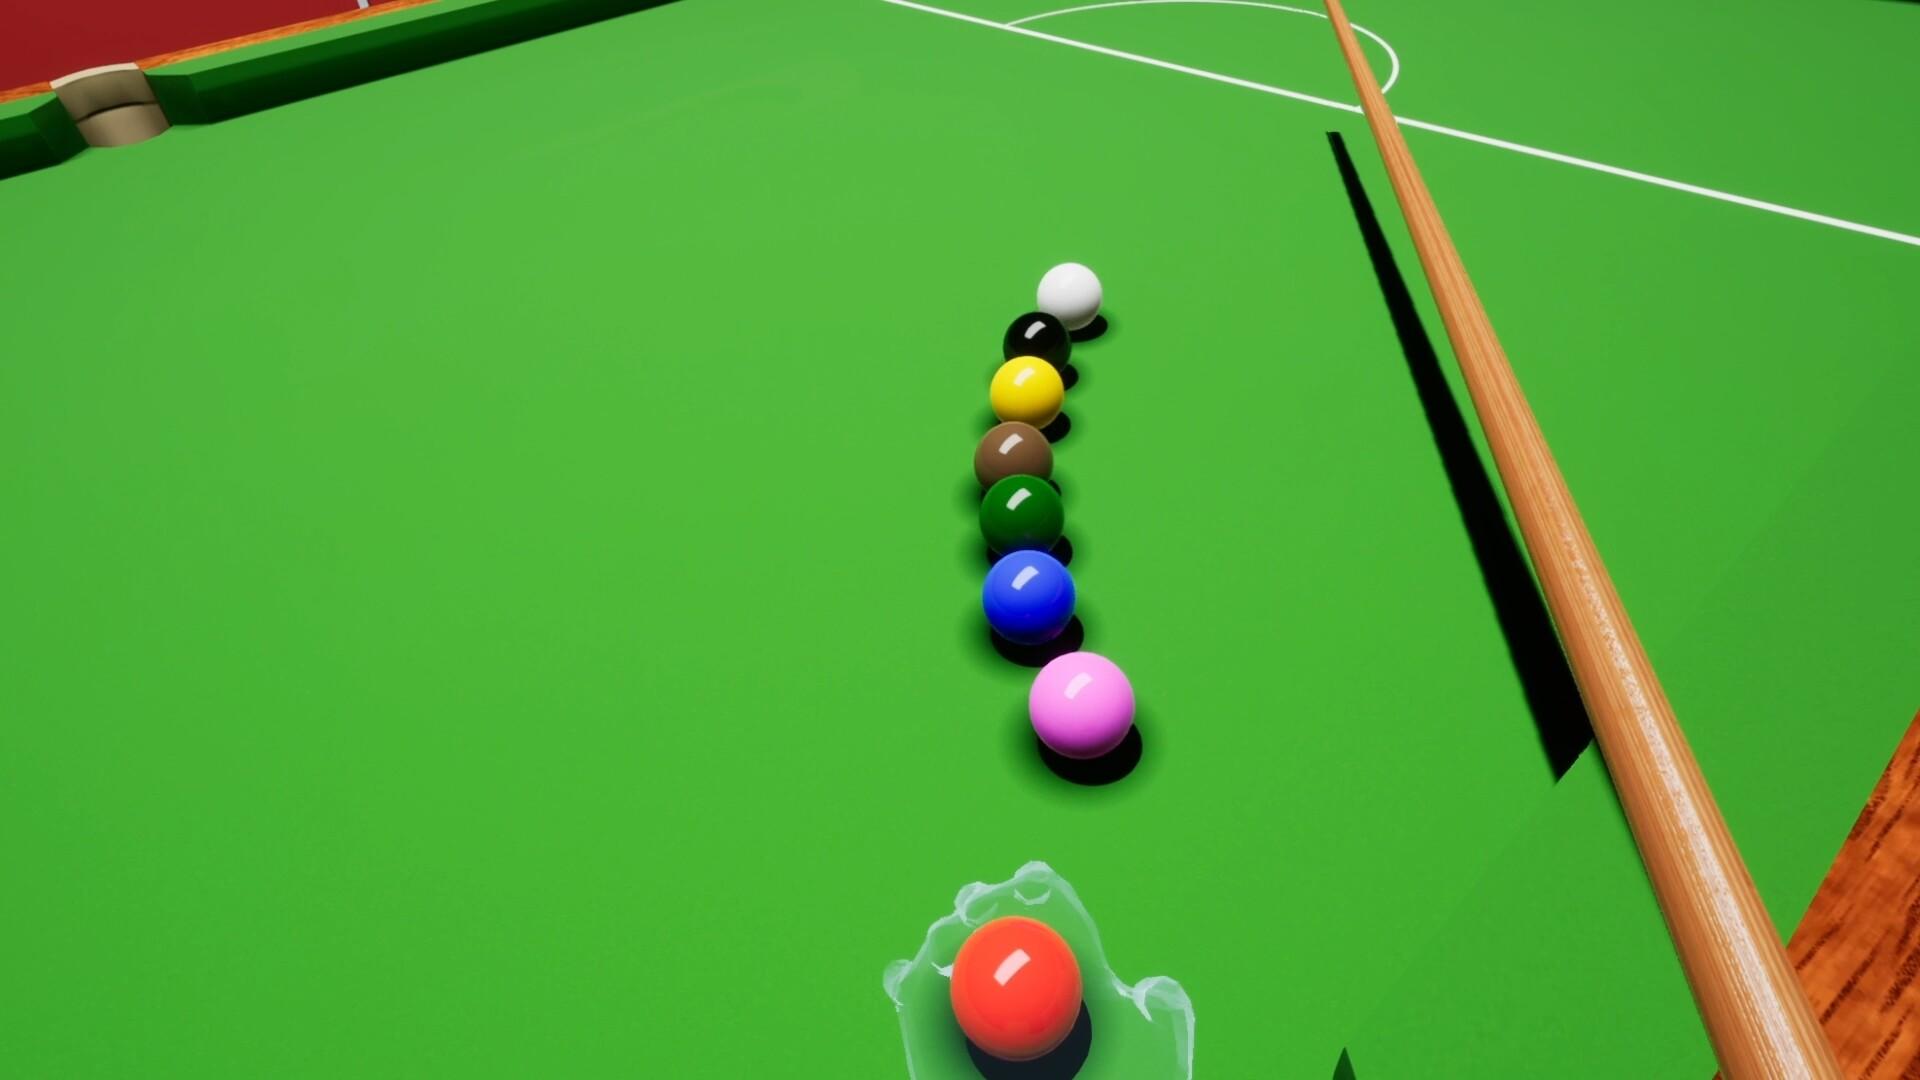 Estrelas do Snooker Esporte Online 3D versão móvel andróide iOS